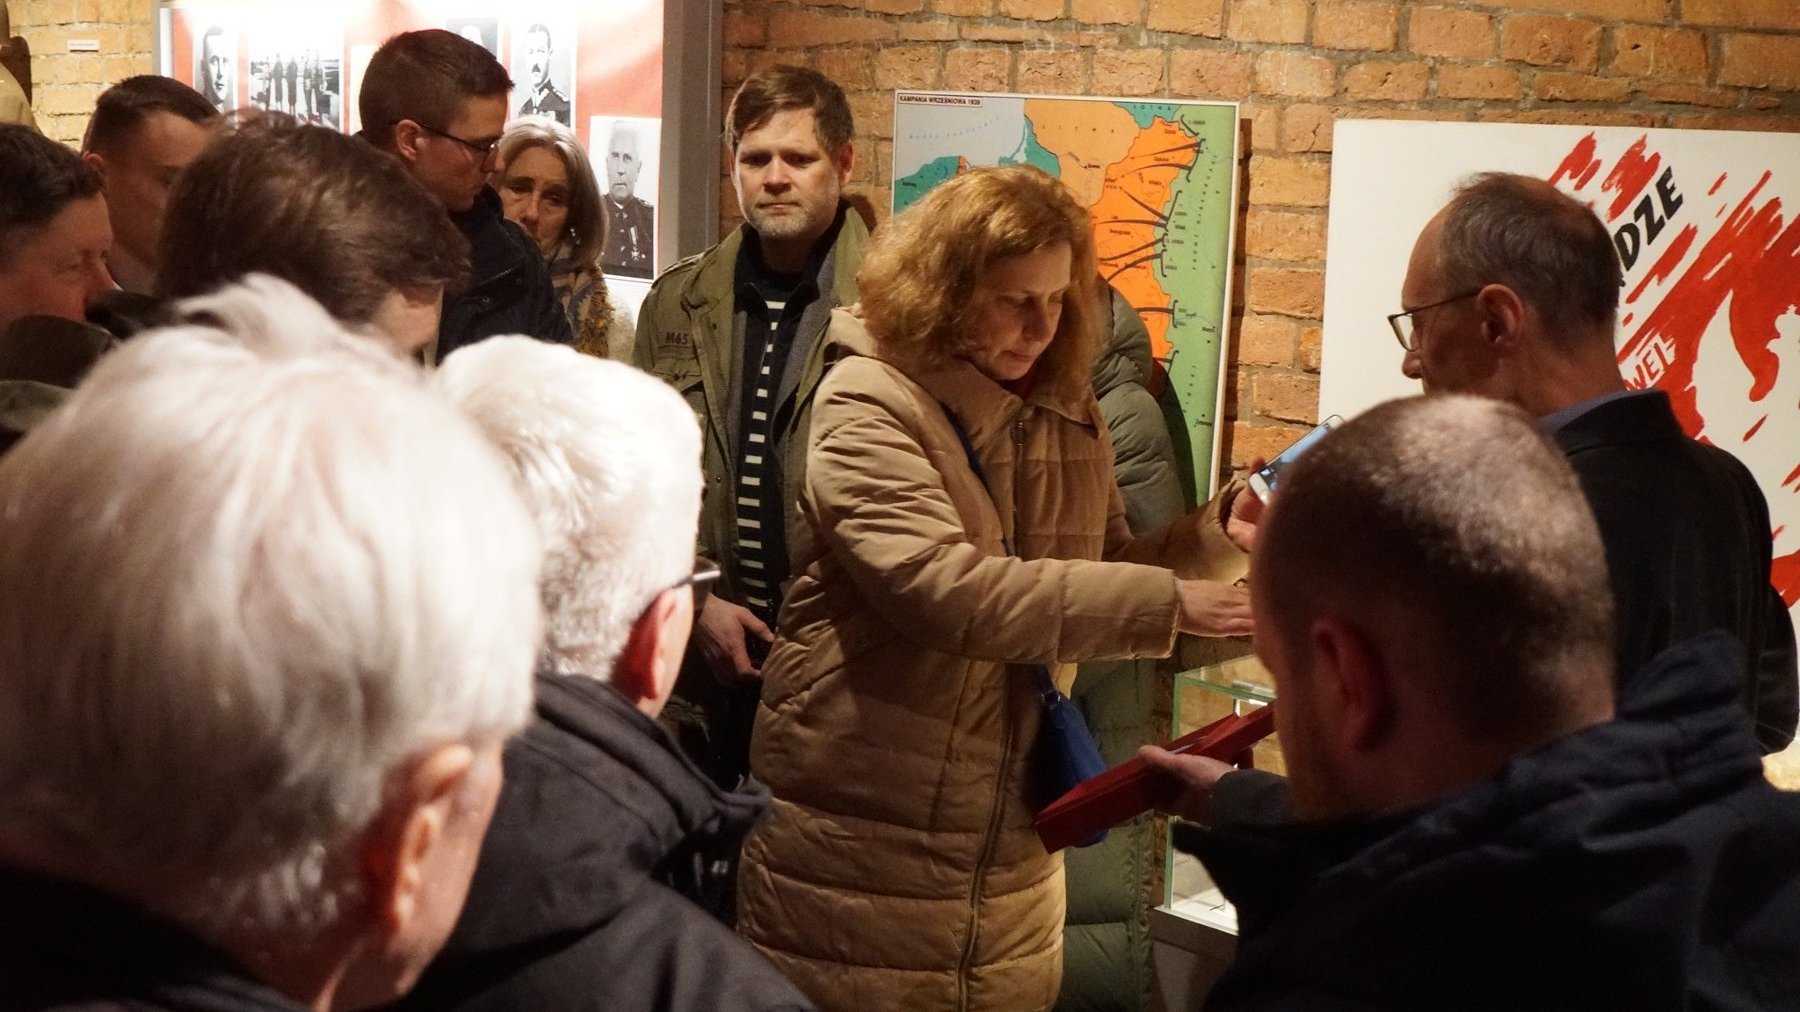 Kilka fotografii przedstawiających publiczność w trakcie zwiedzania z przewodnikiem Muzeum Armii "Poznań" oraz w trakcie spotkania z autorami publikacji w Muzeum Uzbrojenia.